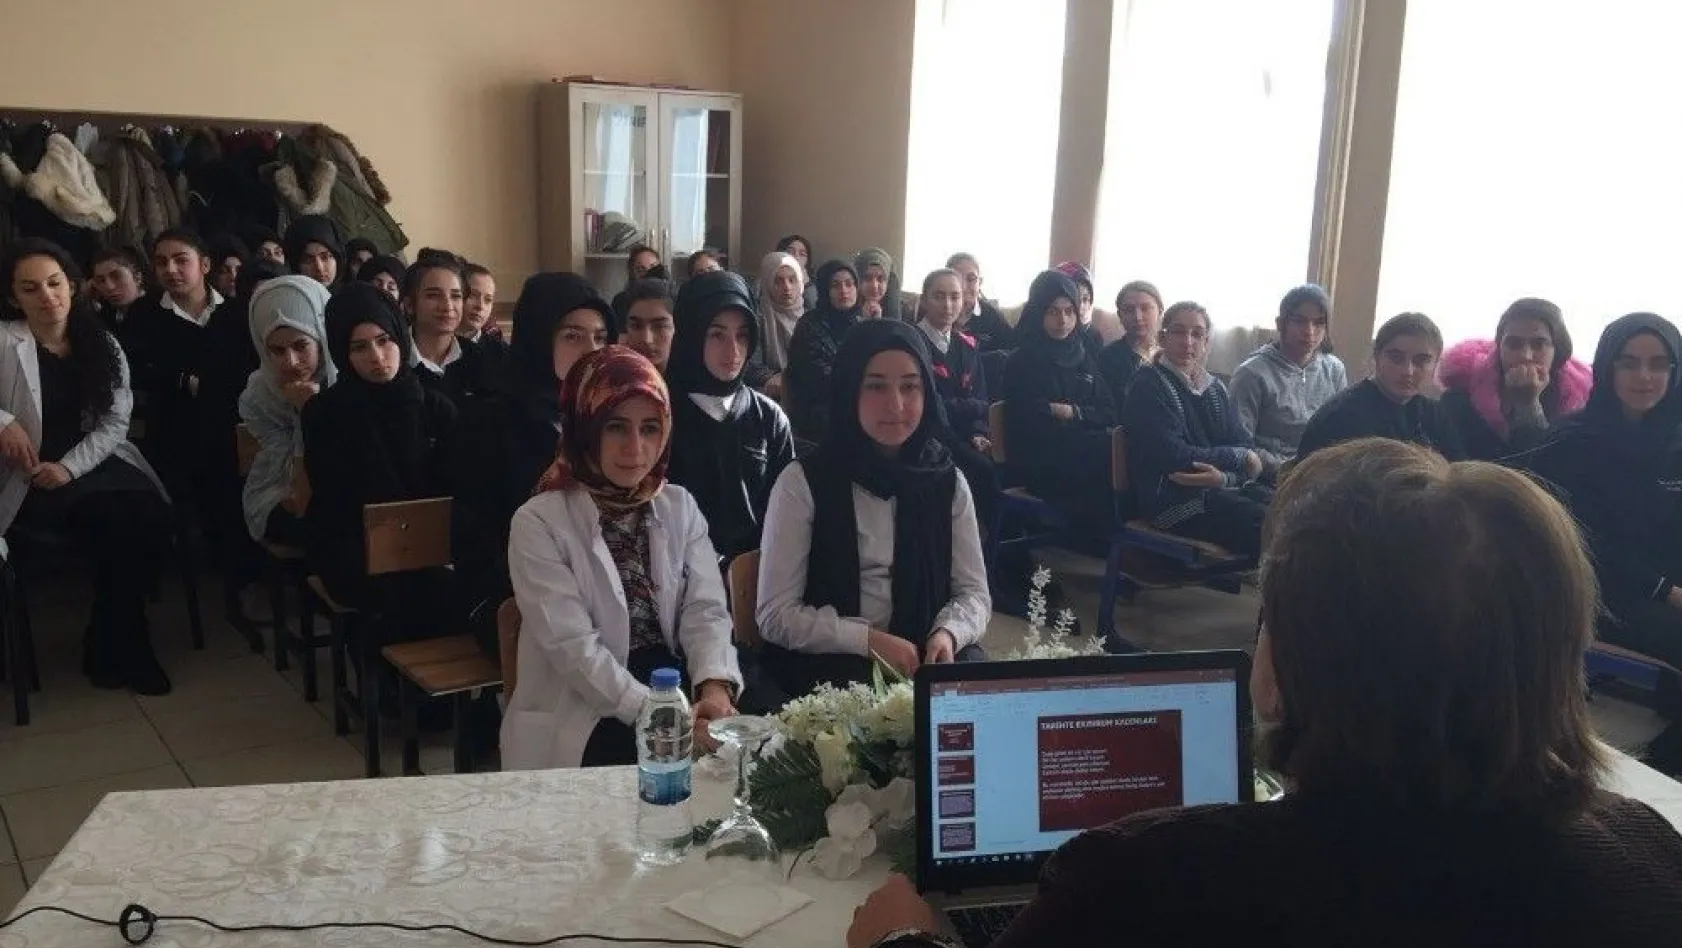 Çomaklı 'Tarihe yazılmış Erzurumlu Kadınlar'ı anlattı
